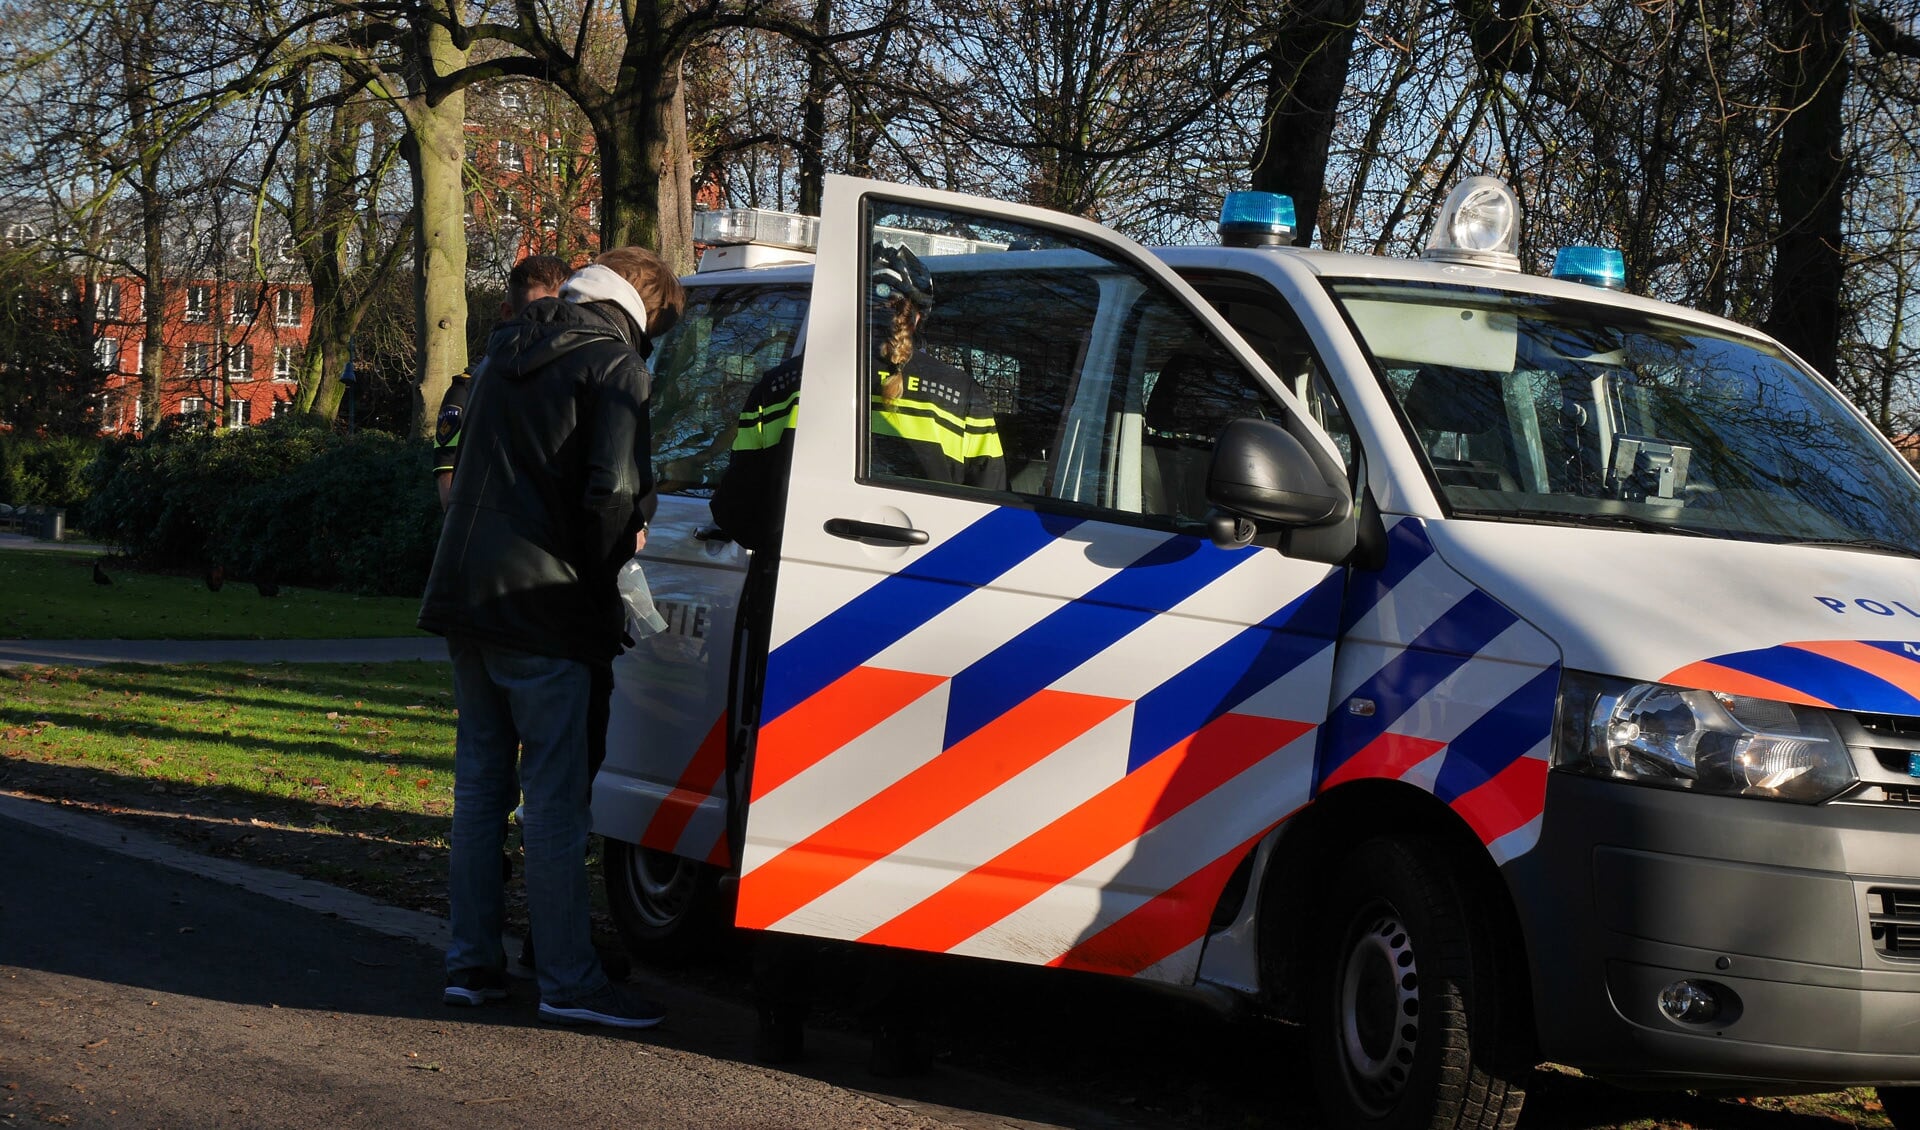 De politie heeft meerdere personen aangehouden tijdens een tweedaagse actie tegen drugsoverlast in het Valkenberg.